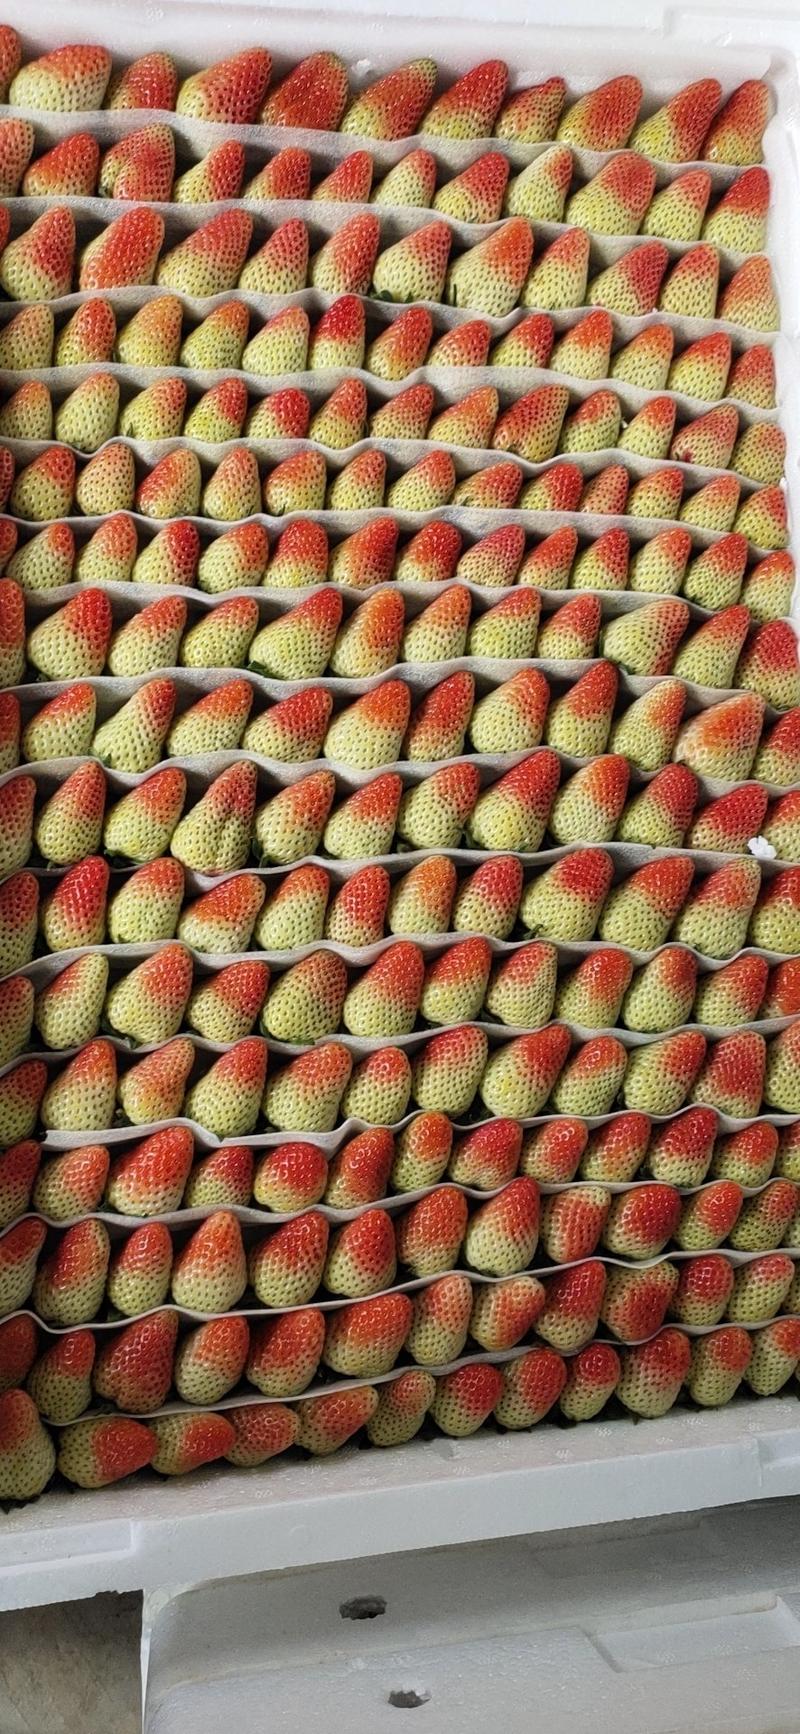 高原草莓奶油草莓味甜多汁个大饱满量大从优对接个大商超